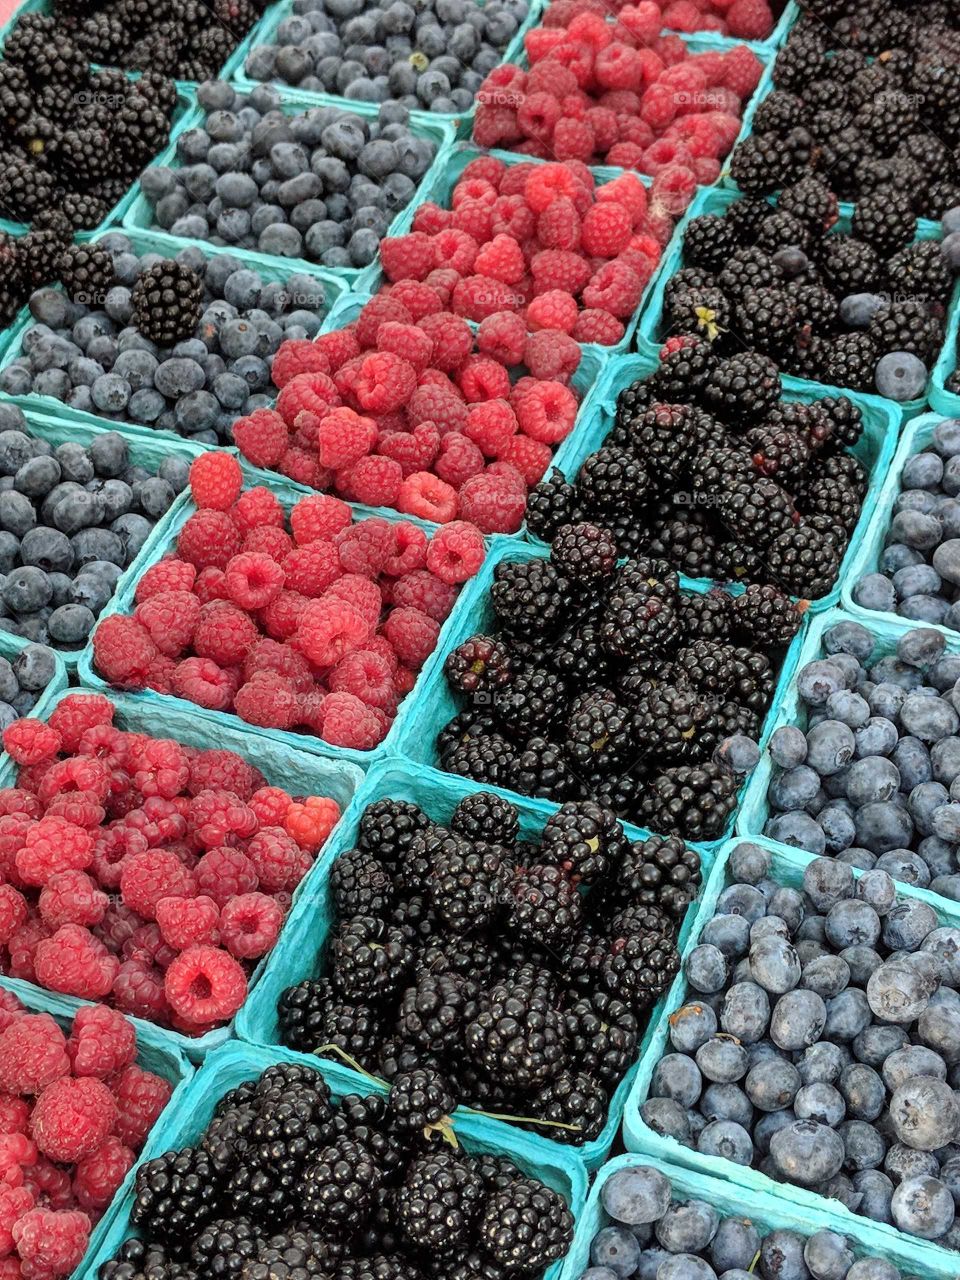 raspberries, blueberries, and blackberries